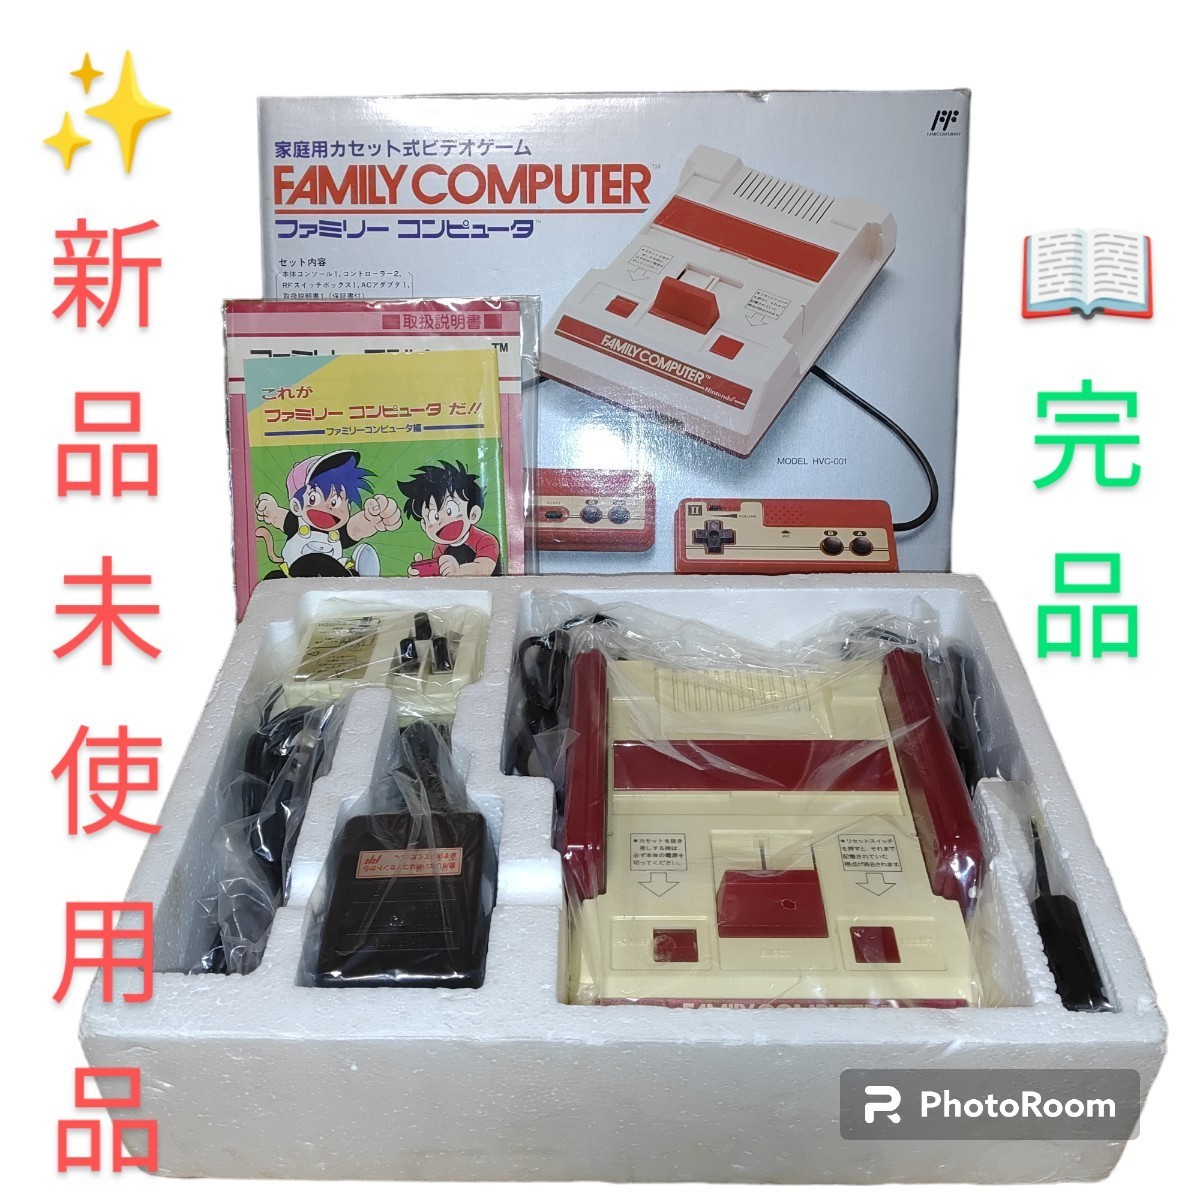 正規品販売! 任天堂/Nintendo ファミリーコンピュータ本体 初代